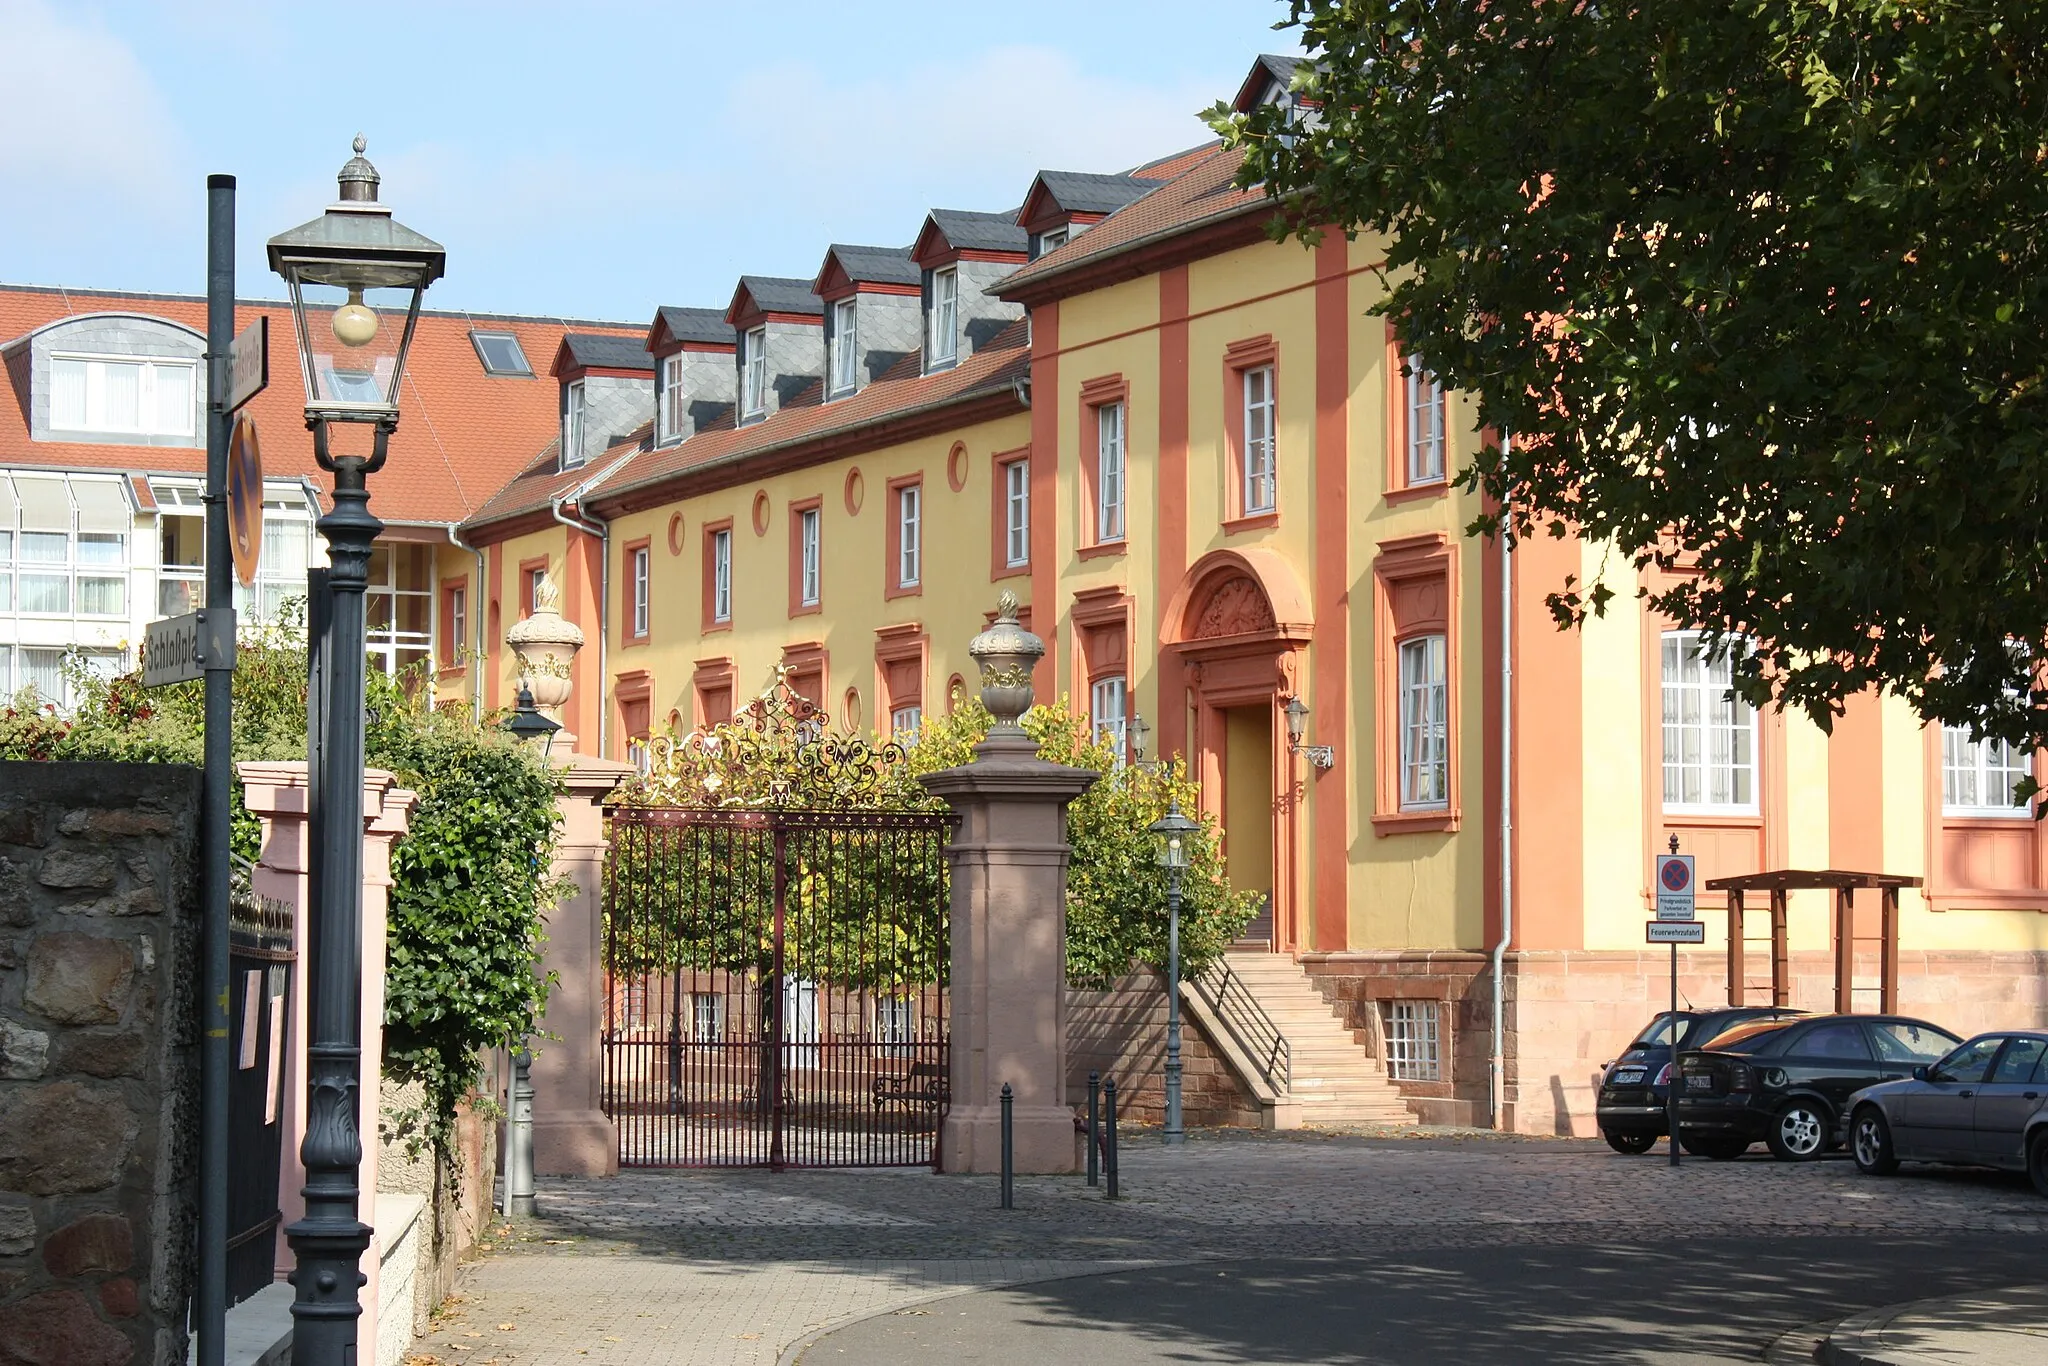 Image of Kirchheimbolanden